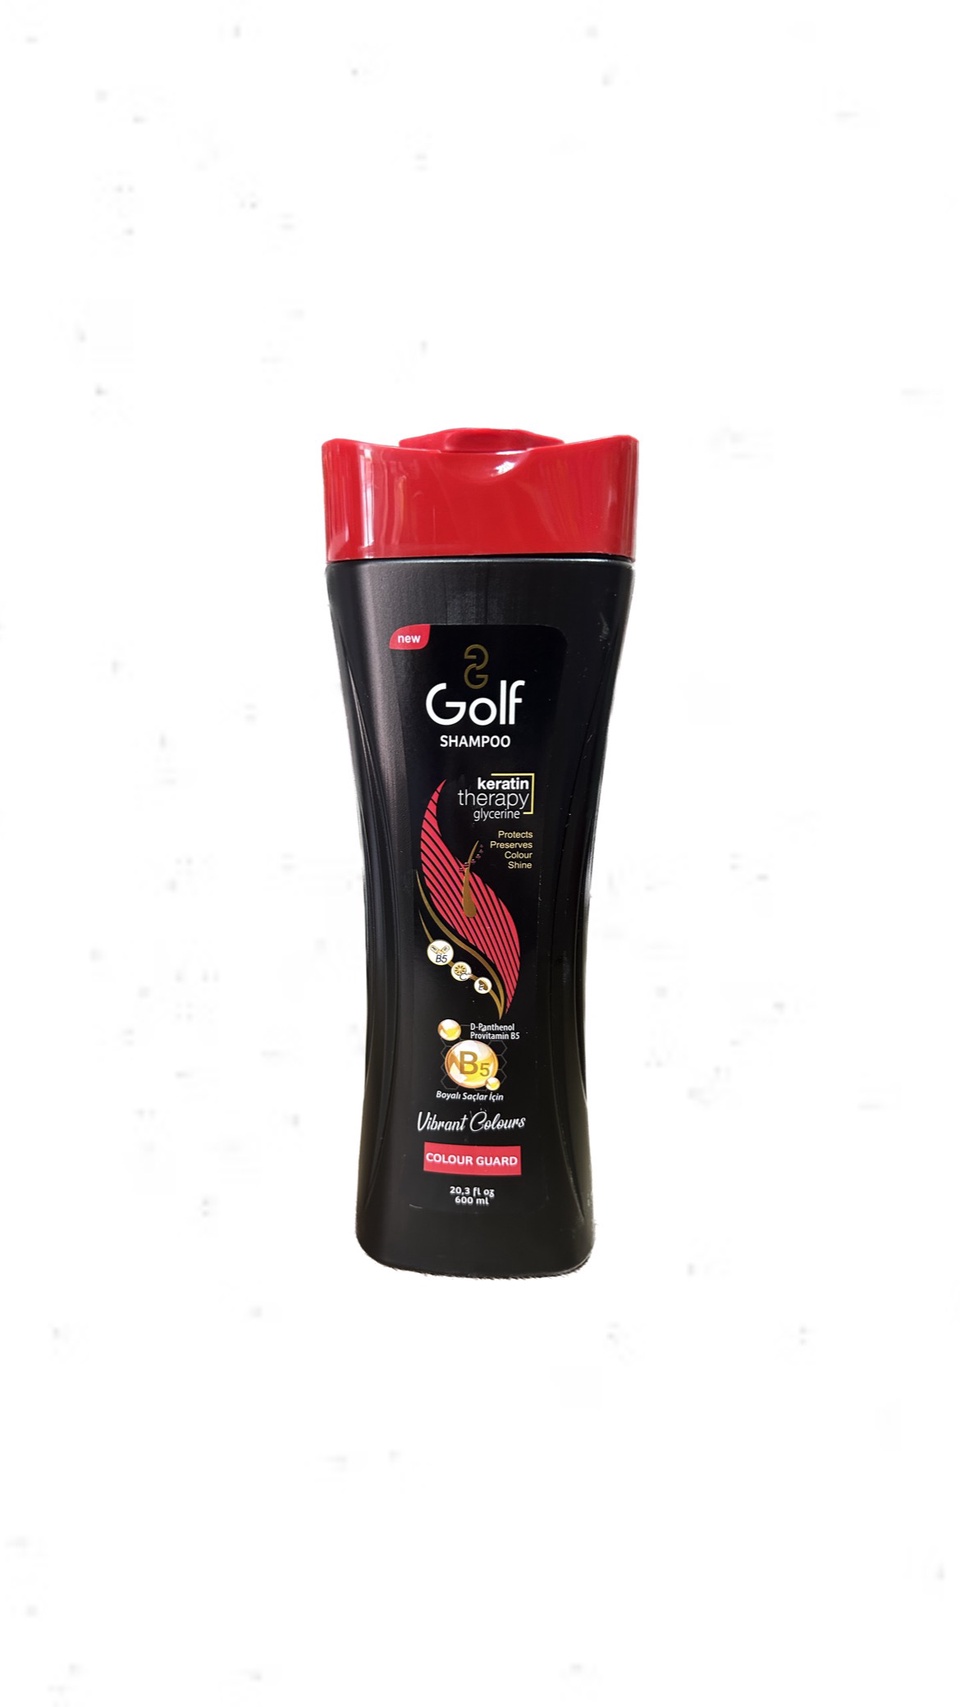 Шампунь для волос Golf Colour Guard для защиты цвета ,600 мл - 250 ₽, заказать онлайн.